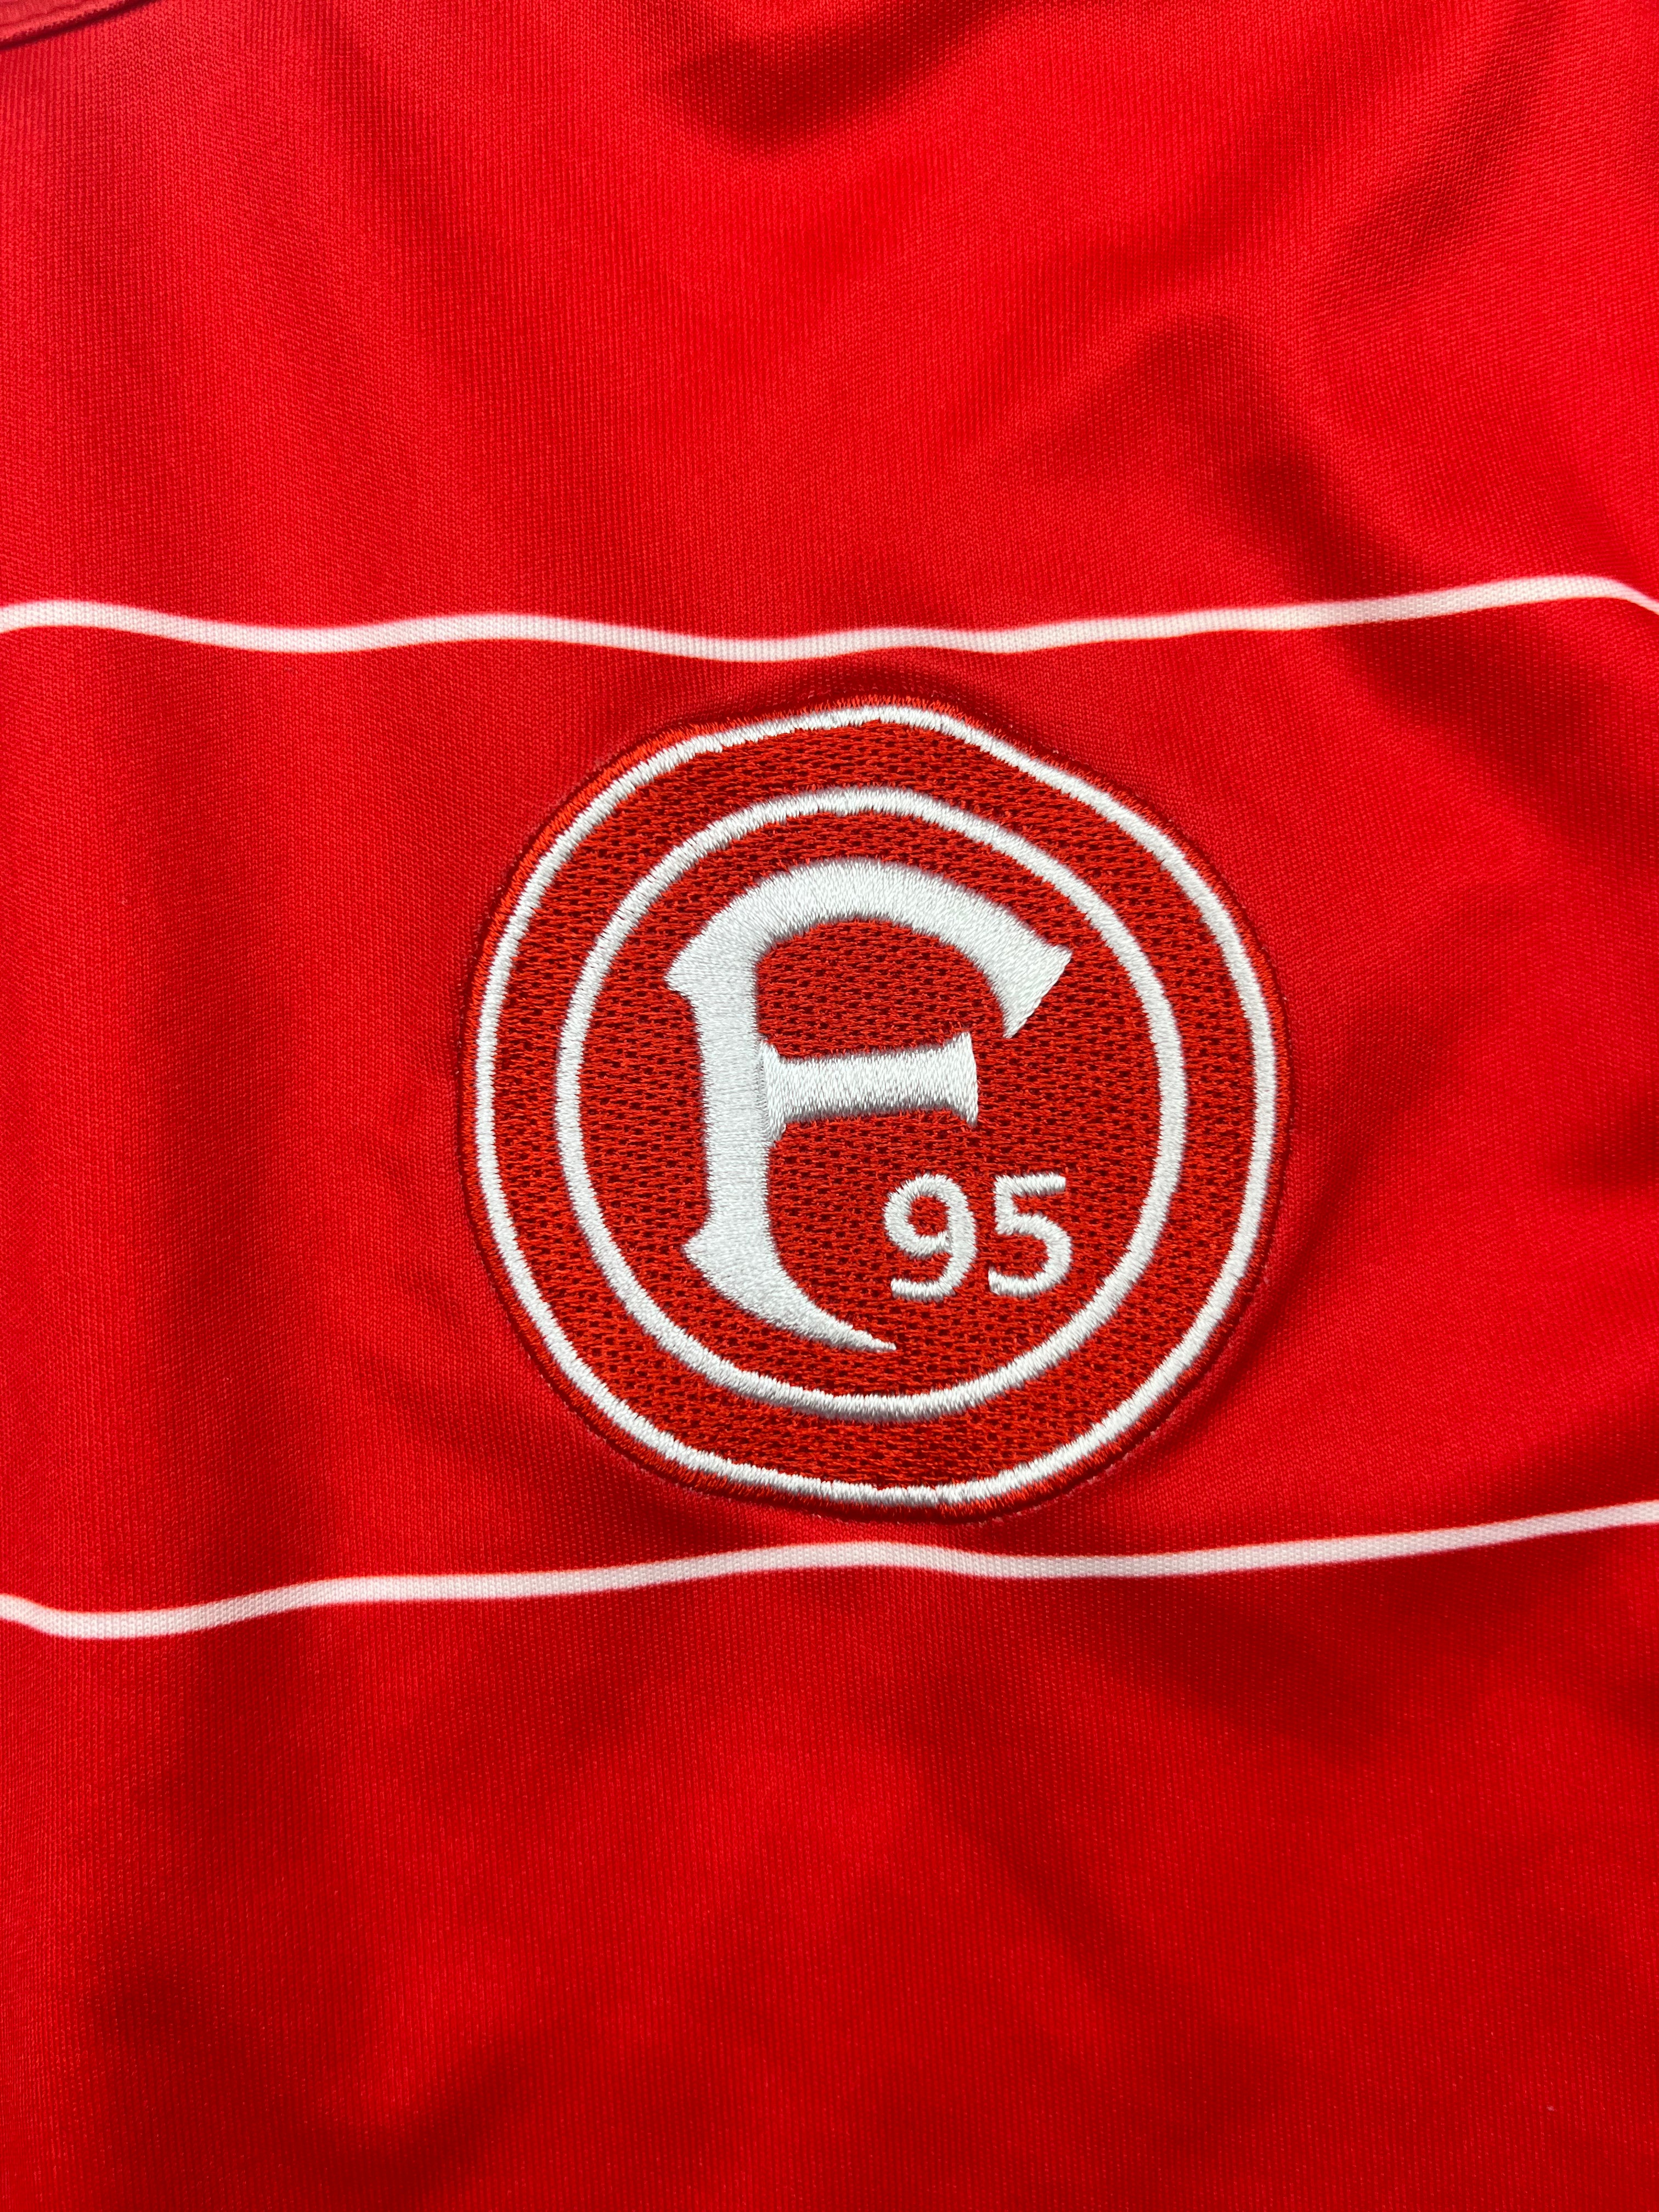 Camiseta de local del Fortuna Dusseldorf 2012/13 (M) 9/10